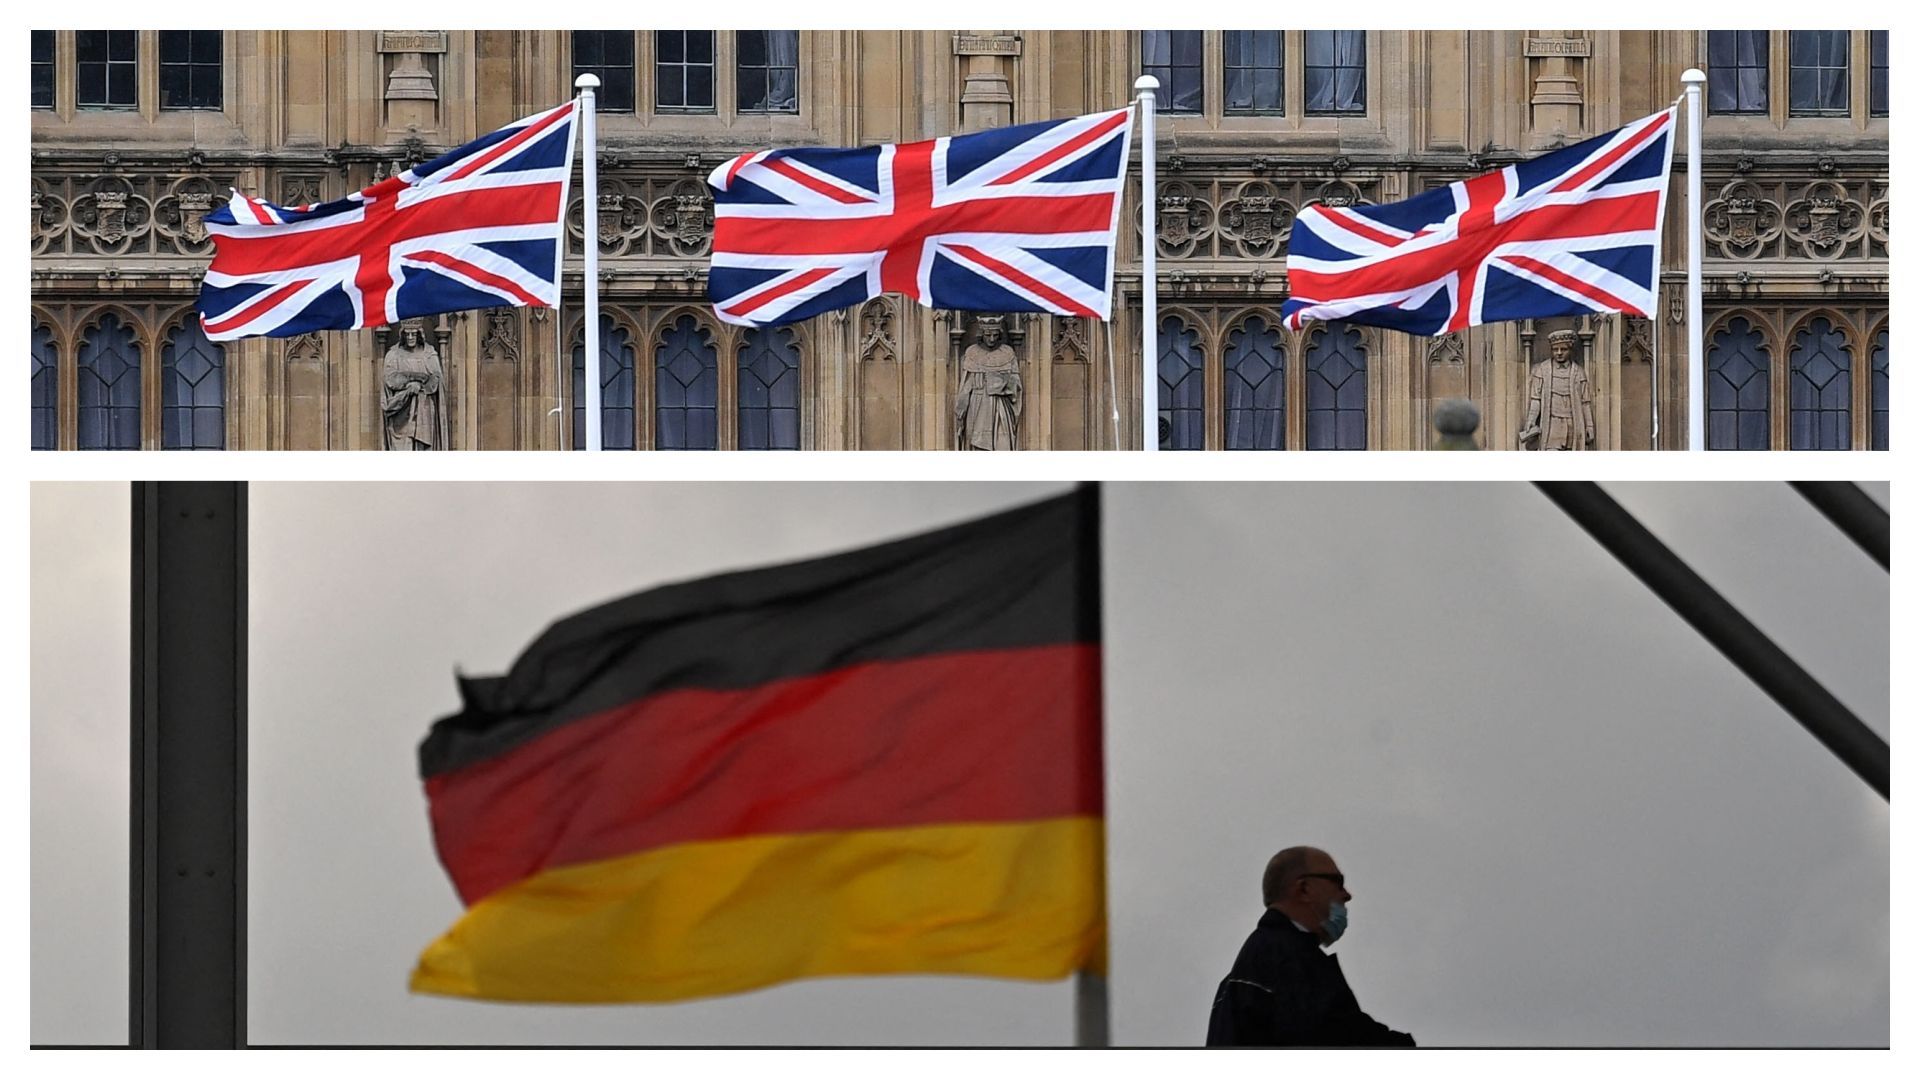 Drapeaux britanniques et drapeau allemand (images d'illustration) 